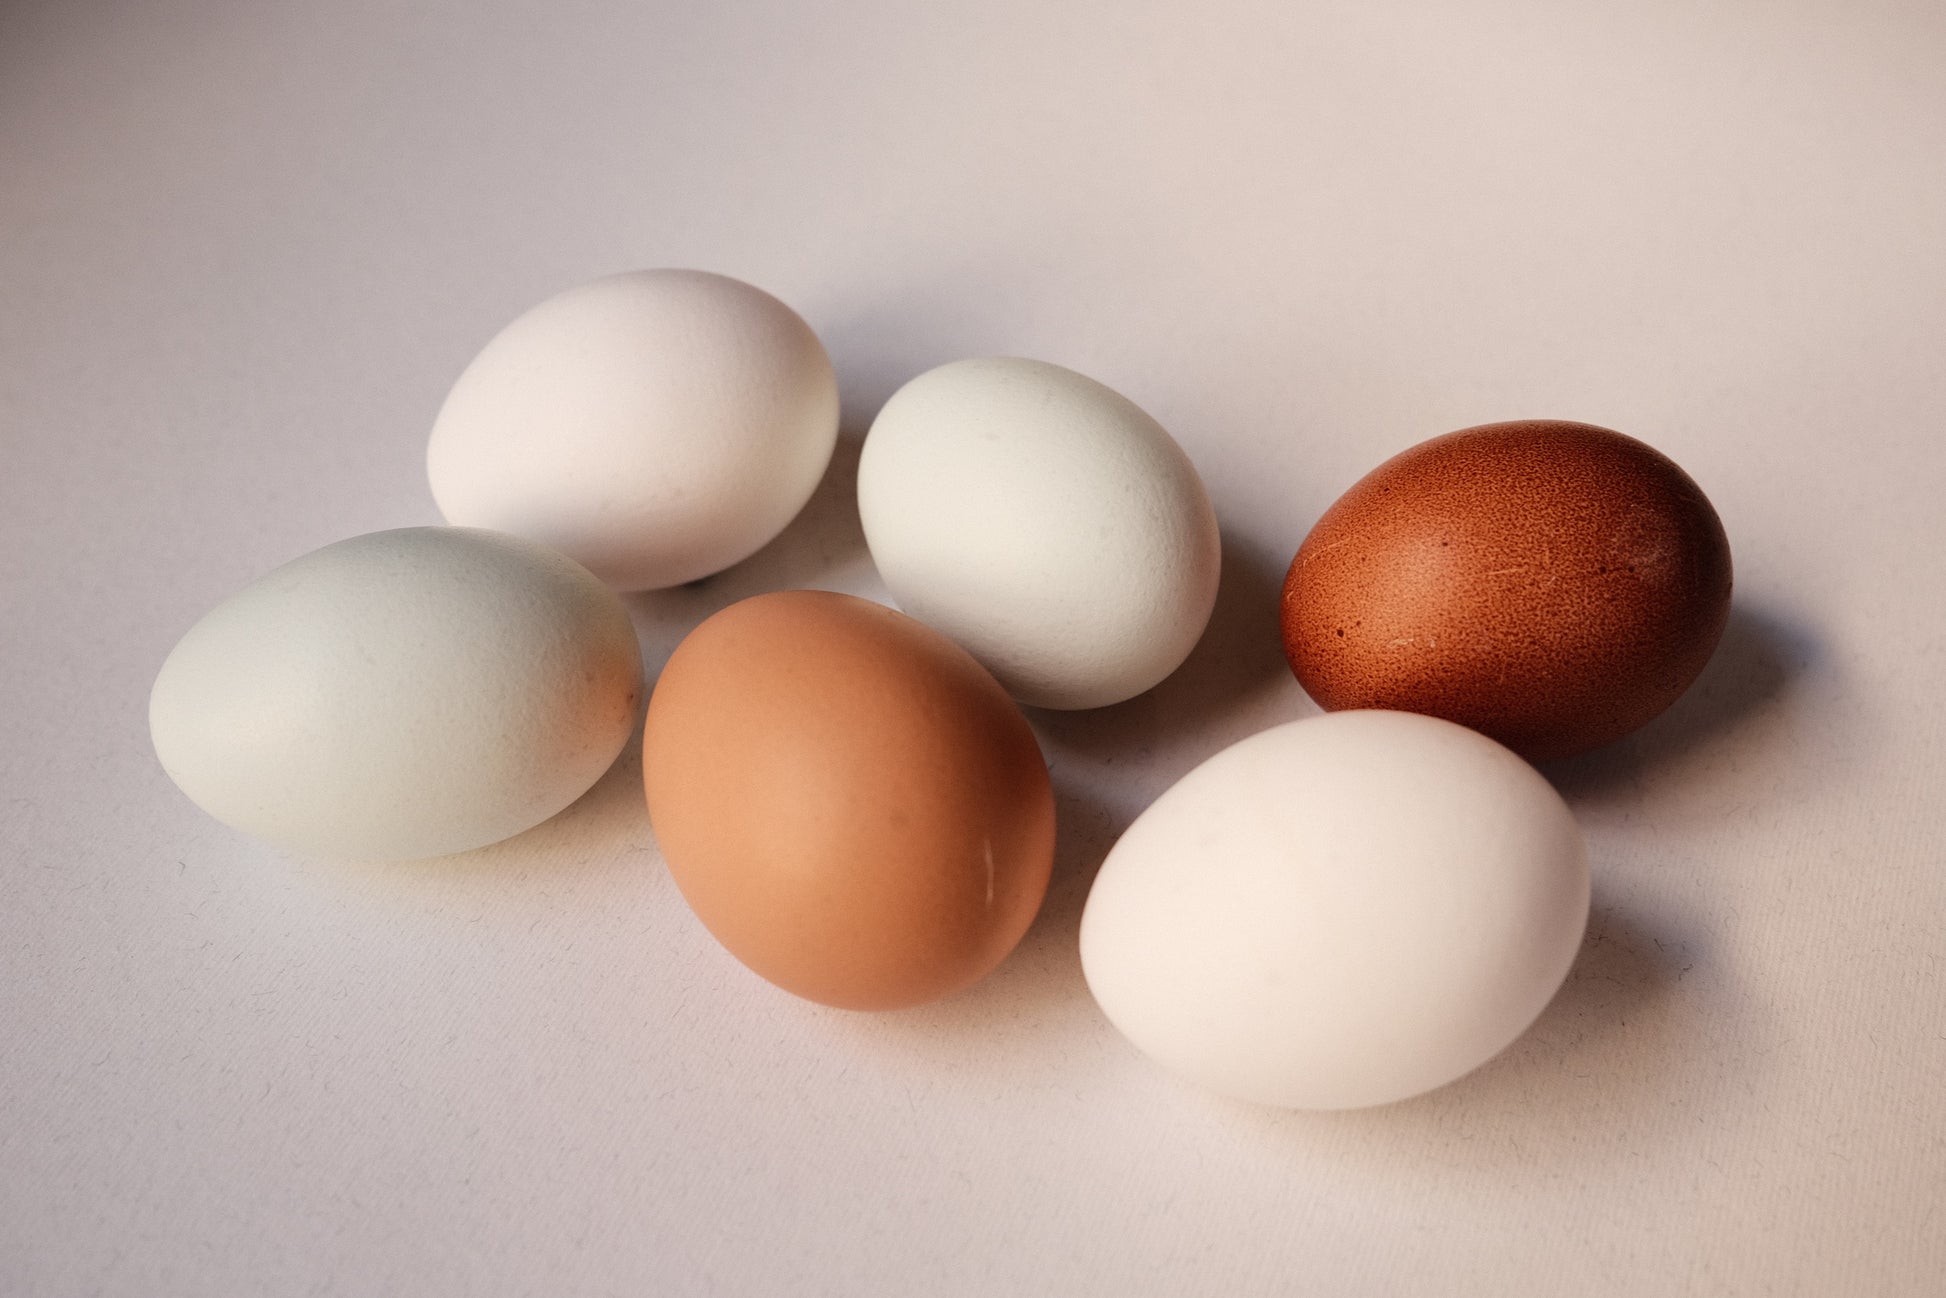 Media docena de huevos "Cobardes y gallinas"